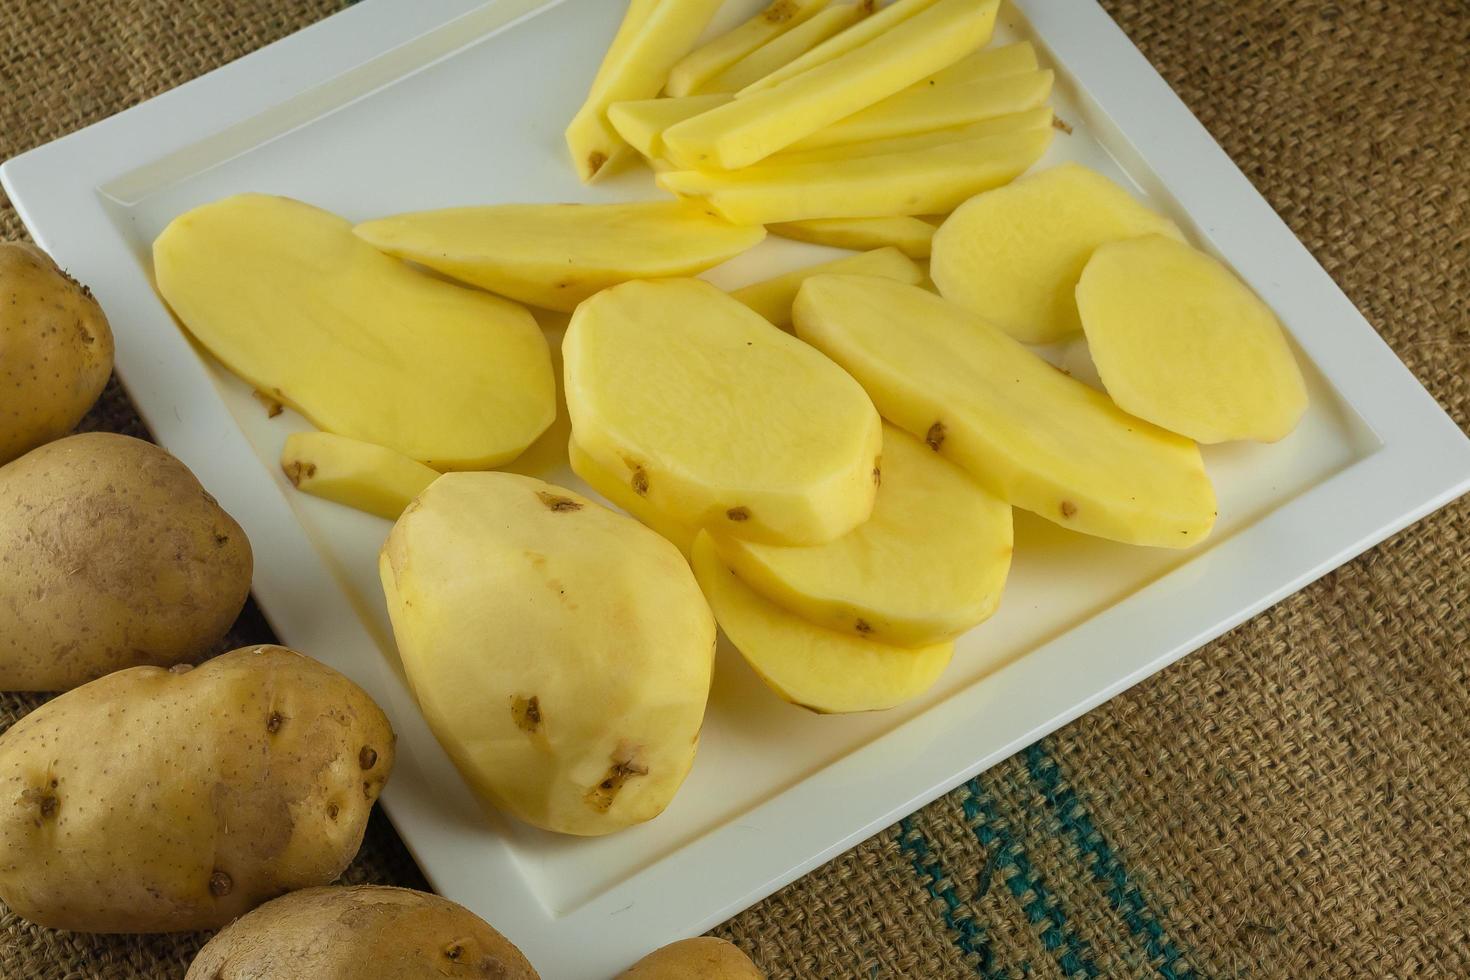 preparazione di patate per cucinare mangiare sano. foto